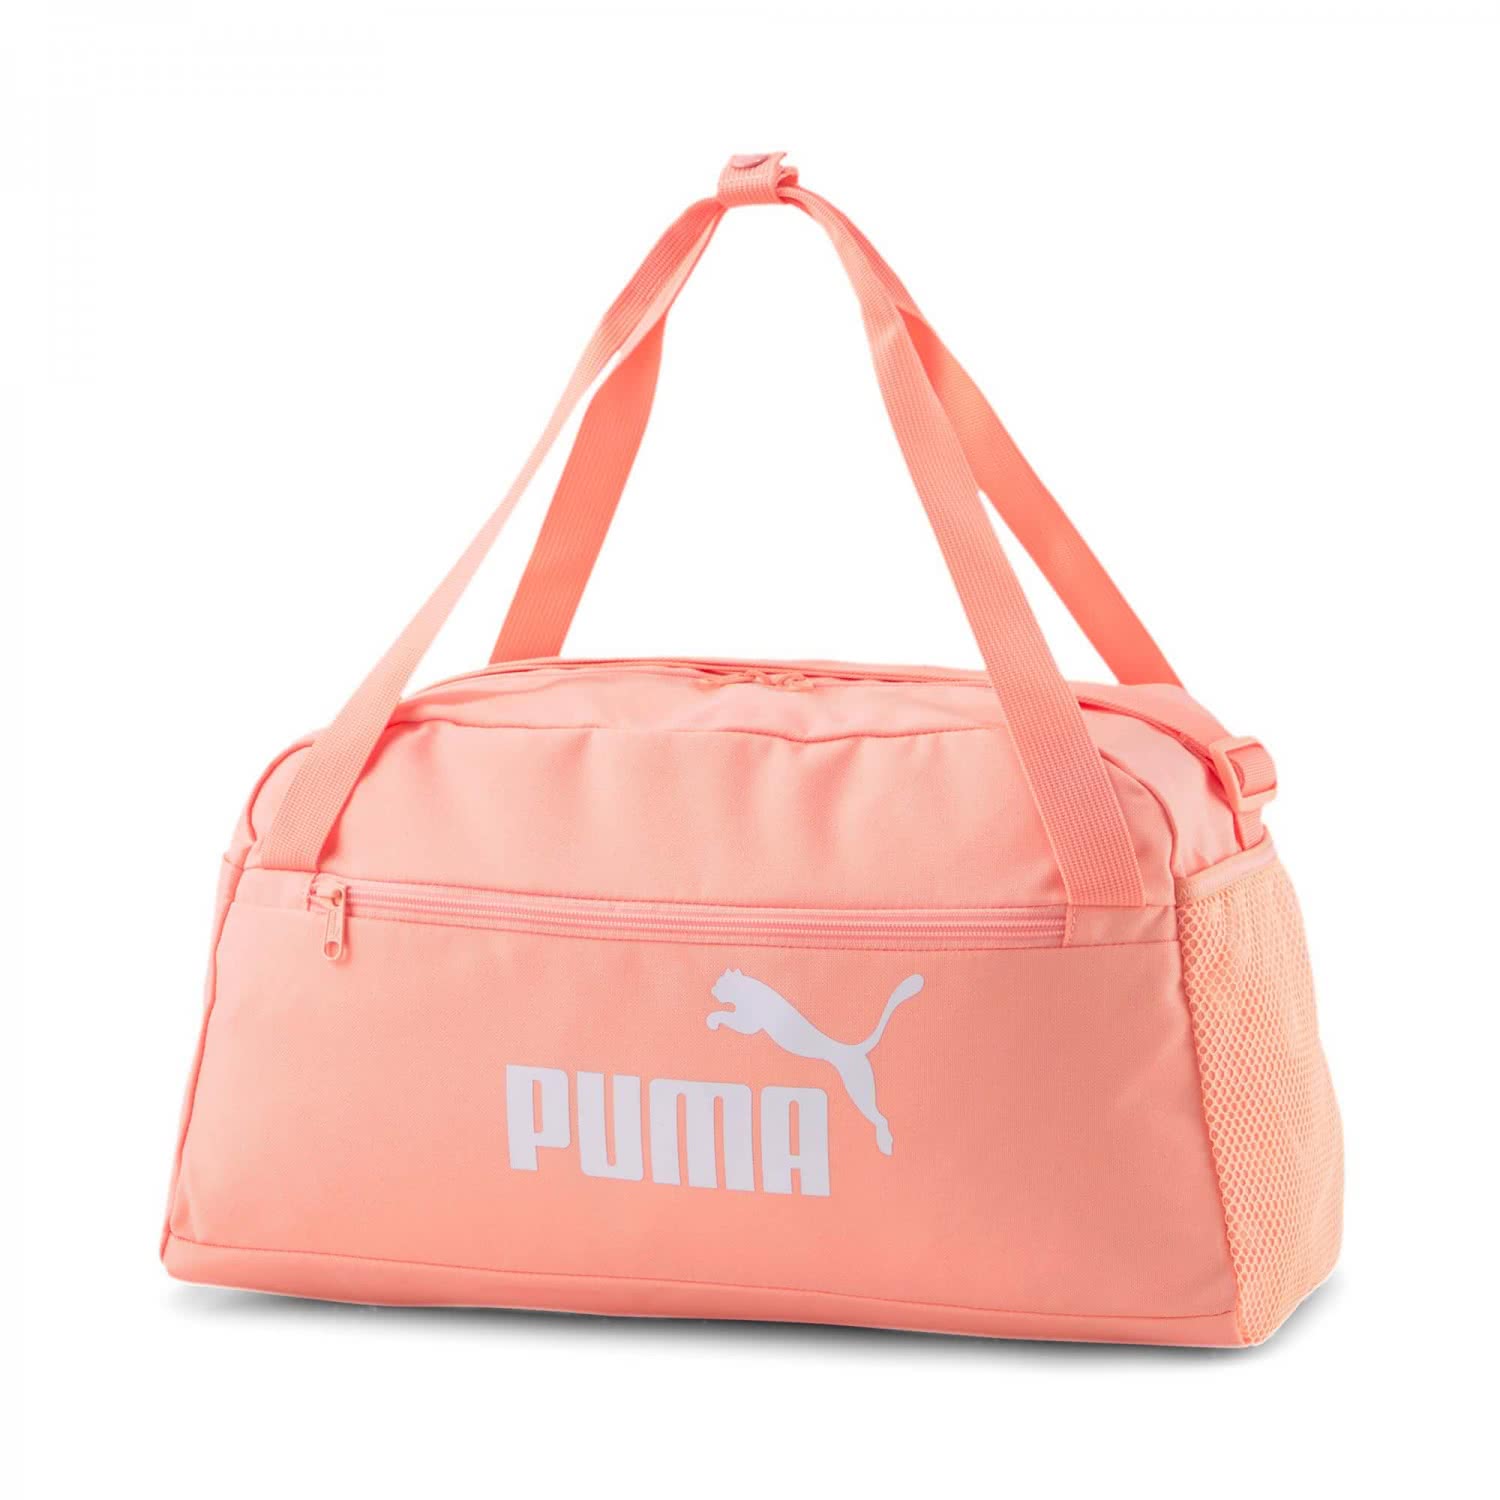 Puma Sporttasche Phase Sports 078033 Bag